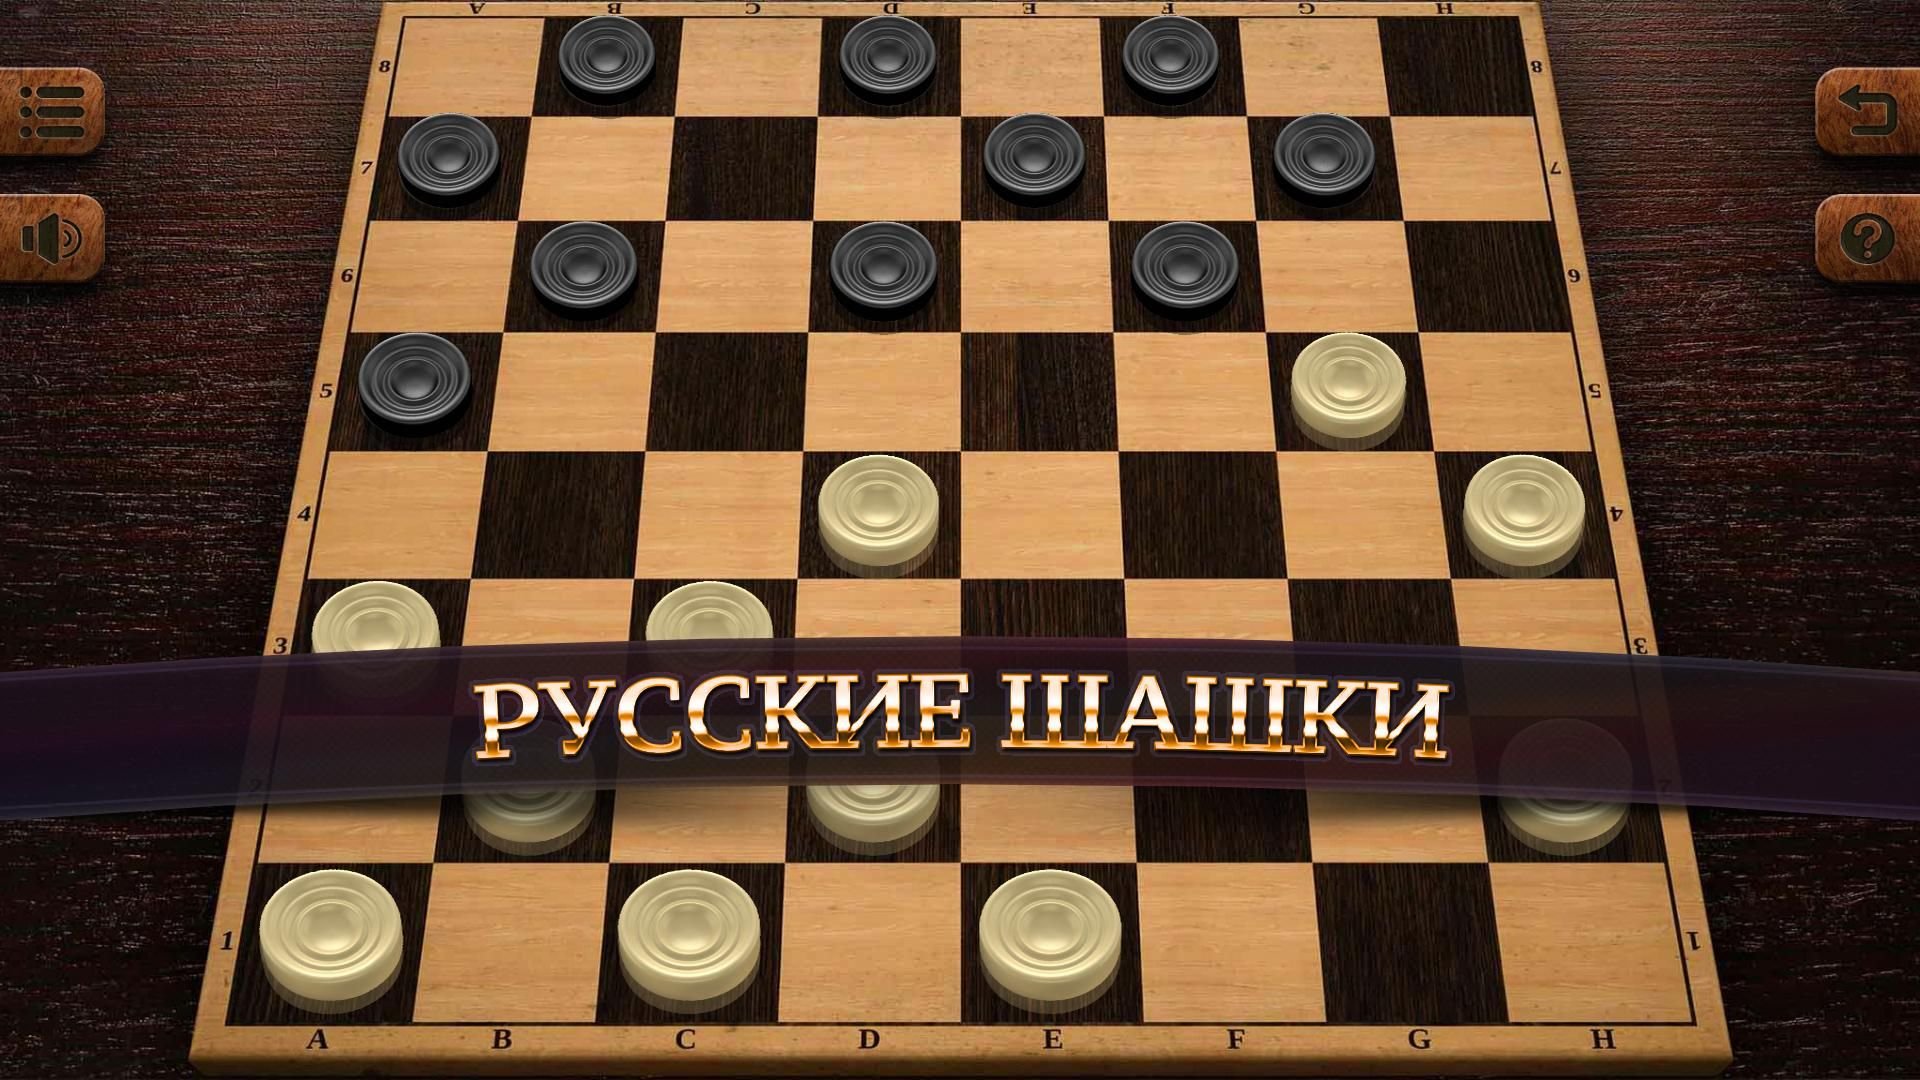 Игры шашки и другие. Русские шашки 8.1.50. Чекерс шашки. Русские шашки 3.11.